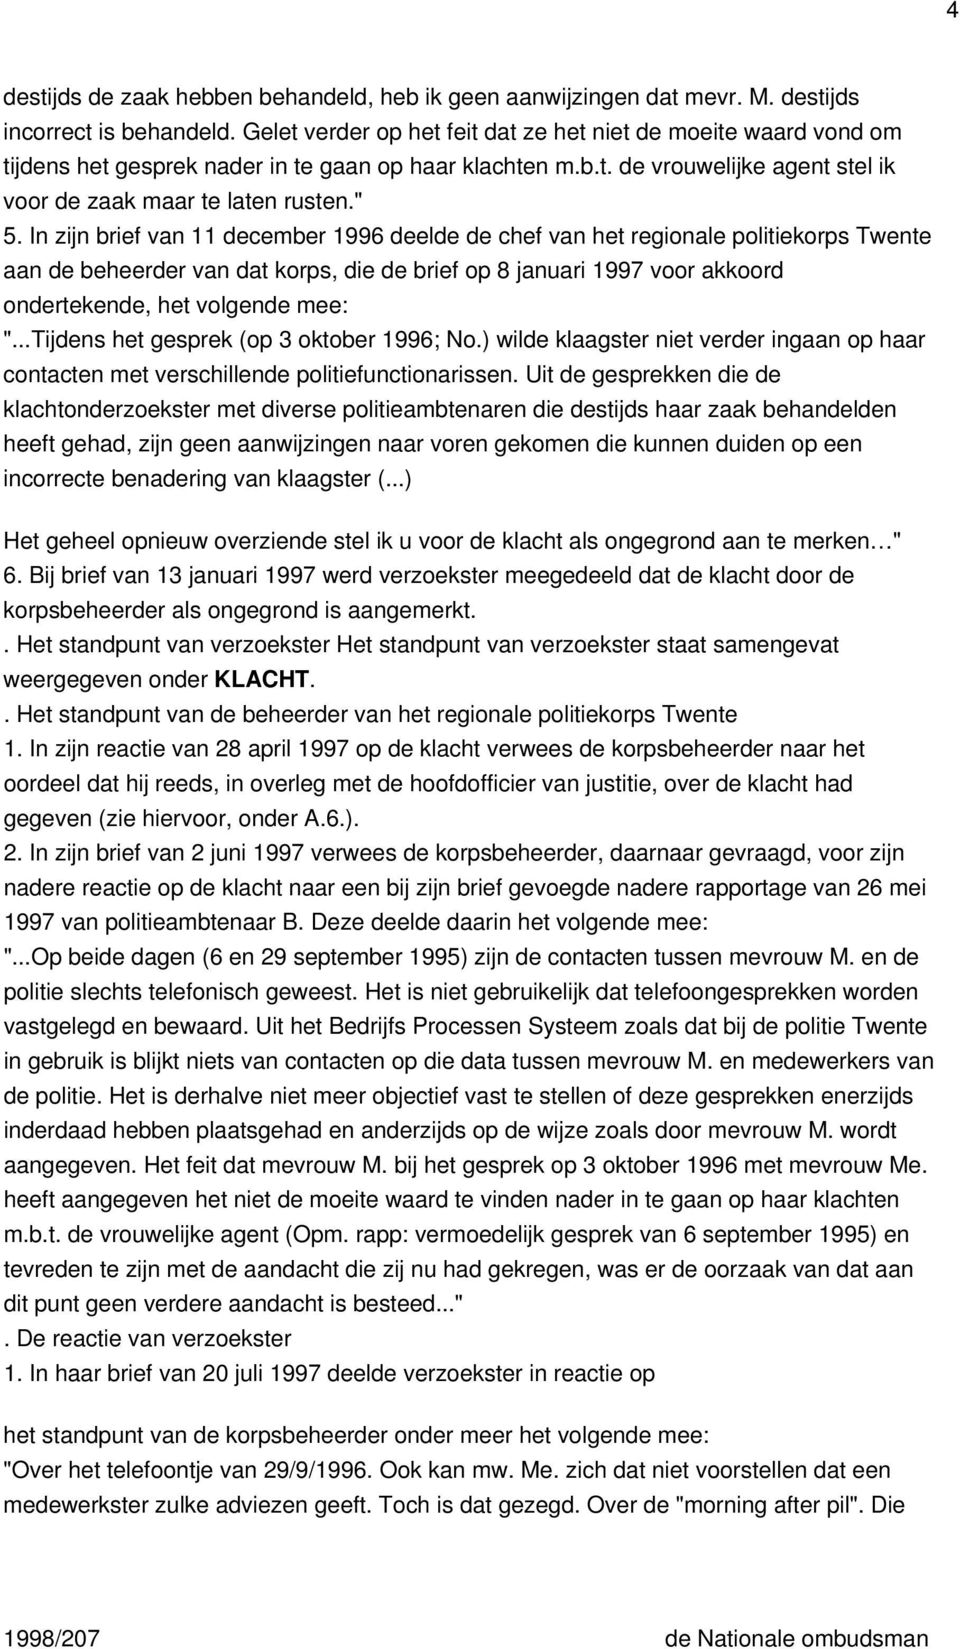 In zijn brief van 11 december 1996 deelde de chef van het regionale politiekorps Twente aan de beheerder van dat korps, die de brief op 8 januari 1997 voor akkoord ondertekende, het volgende mee: ".